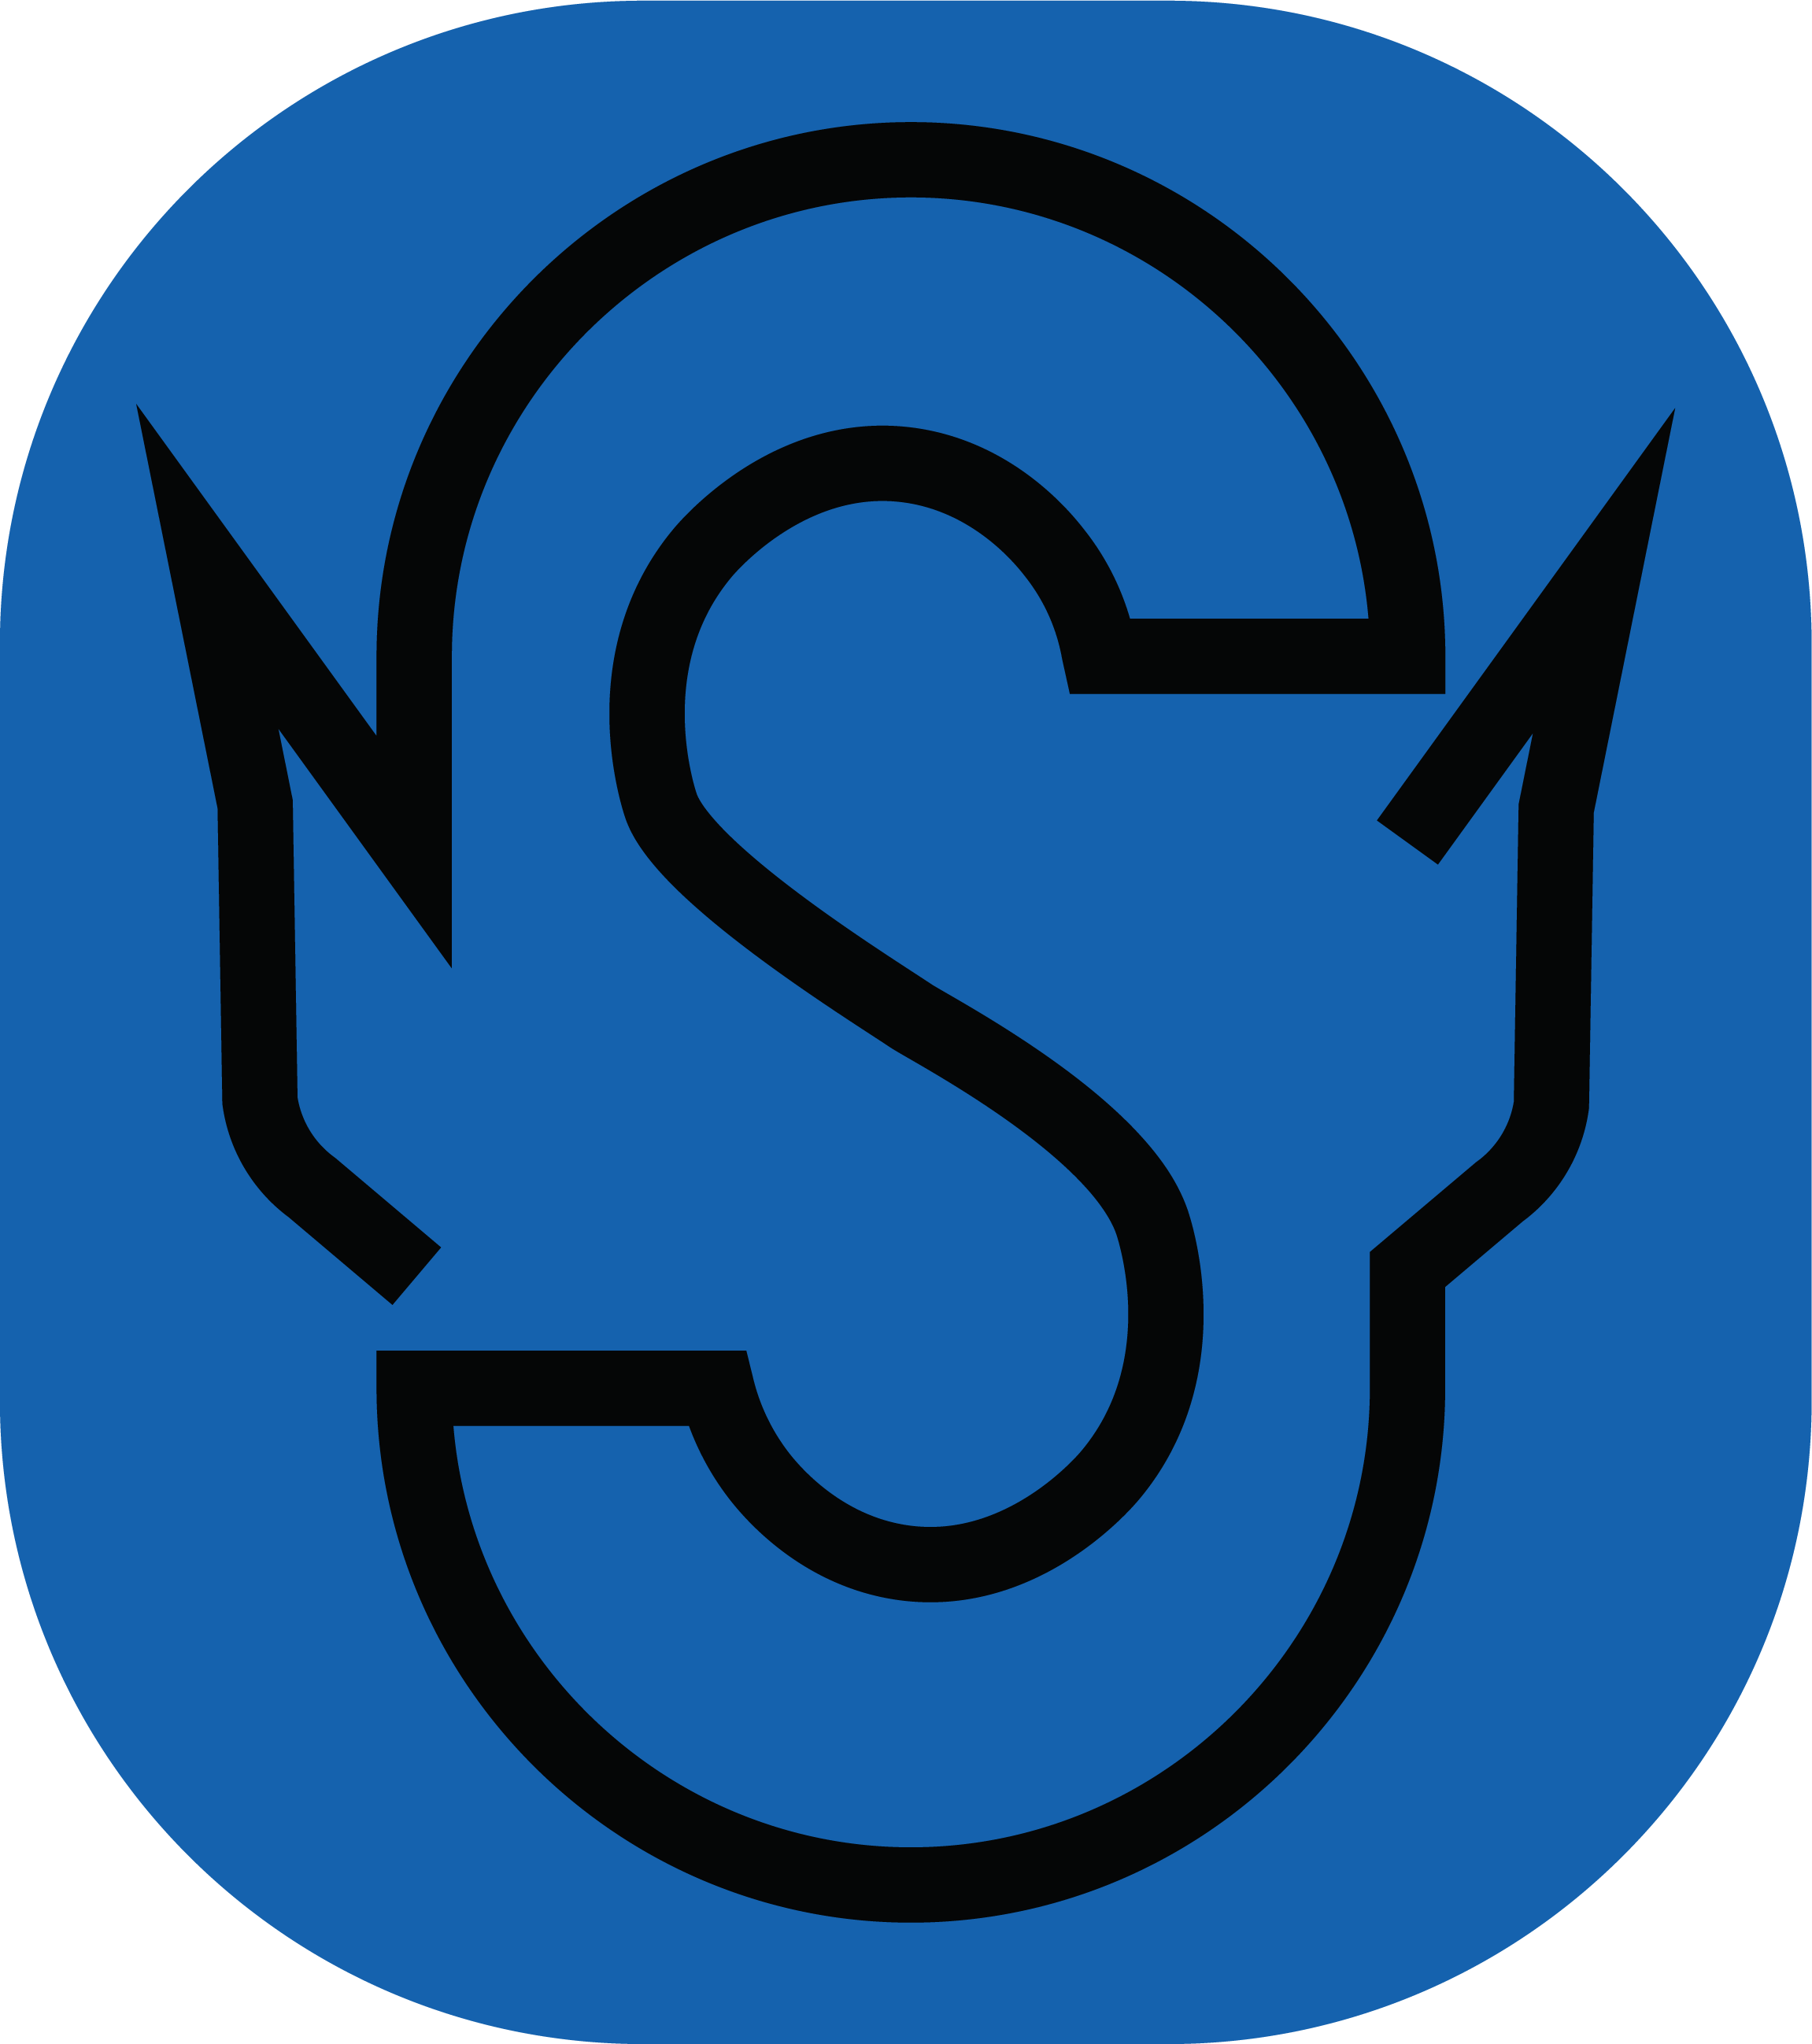 spock logo